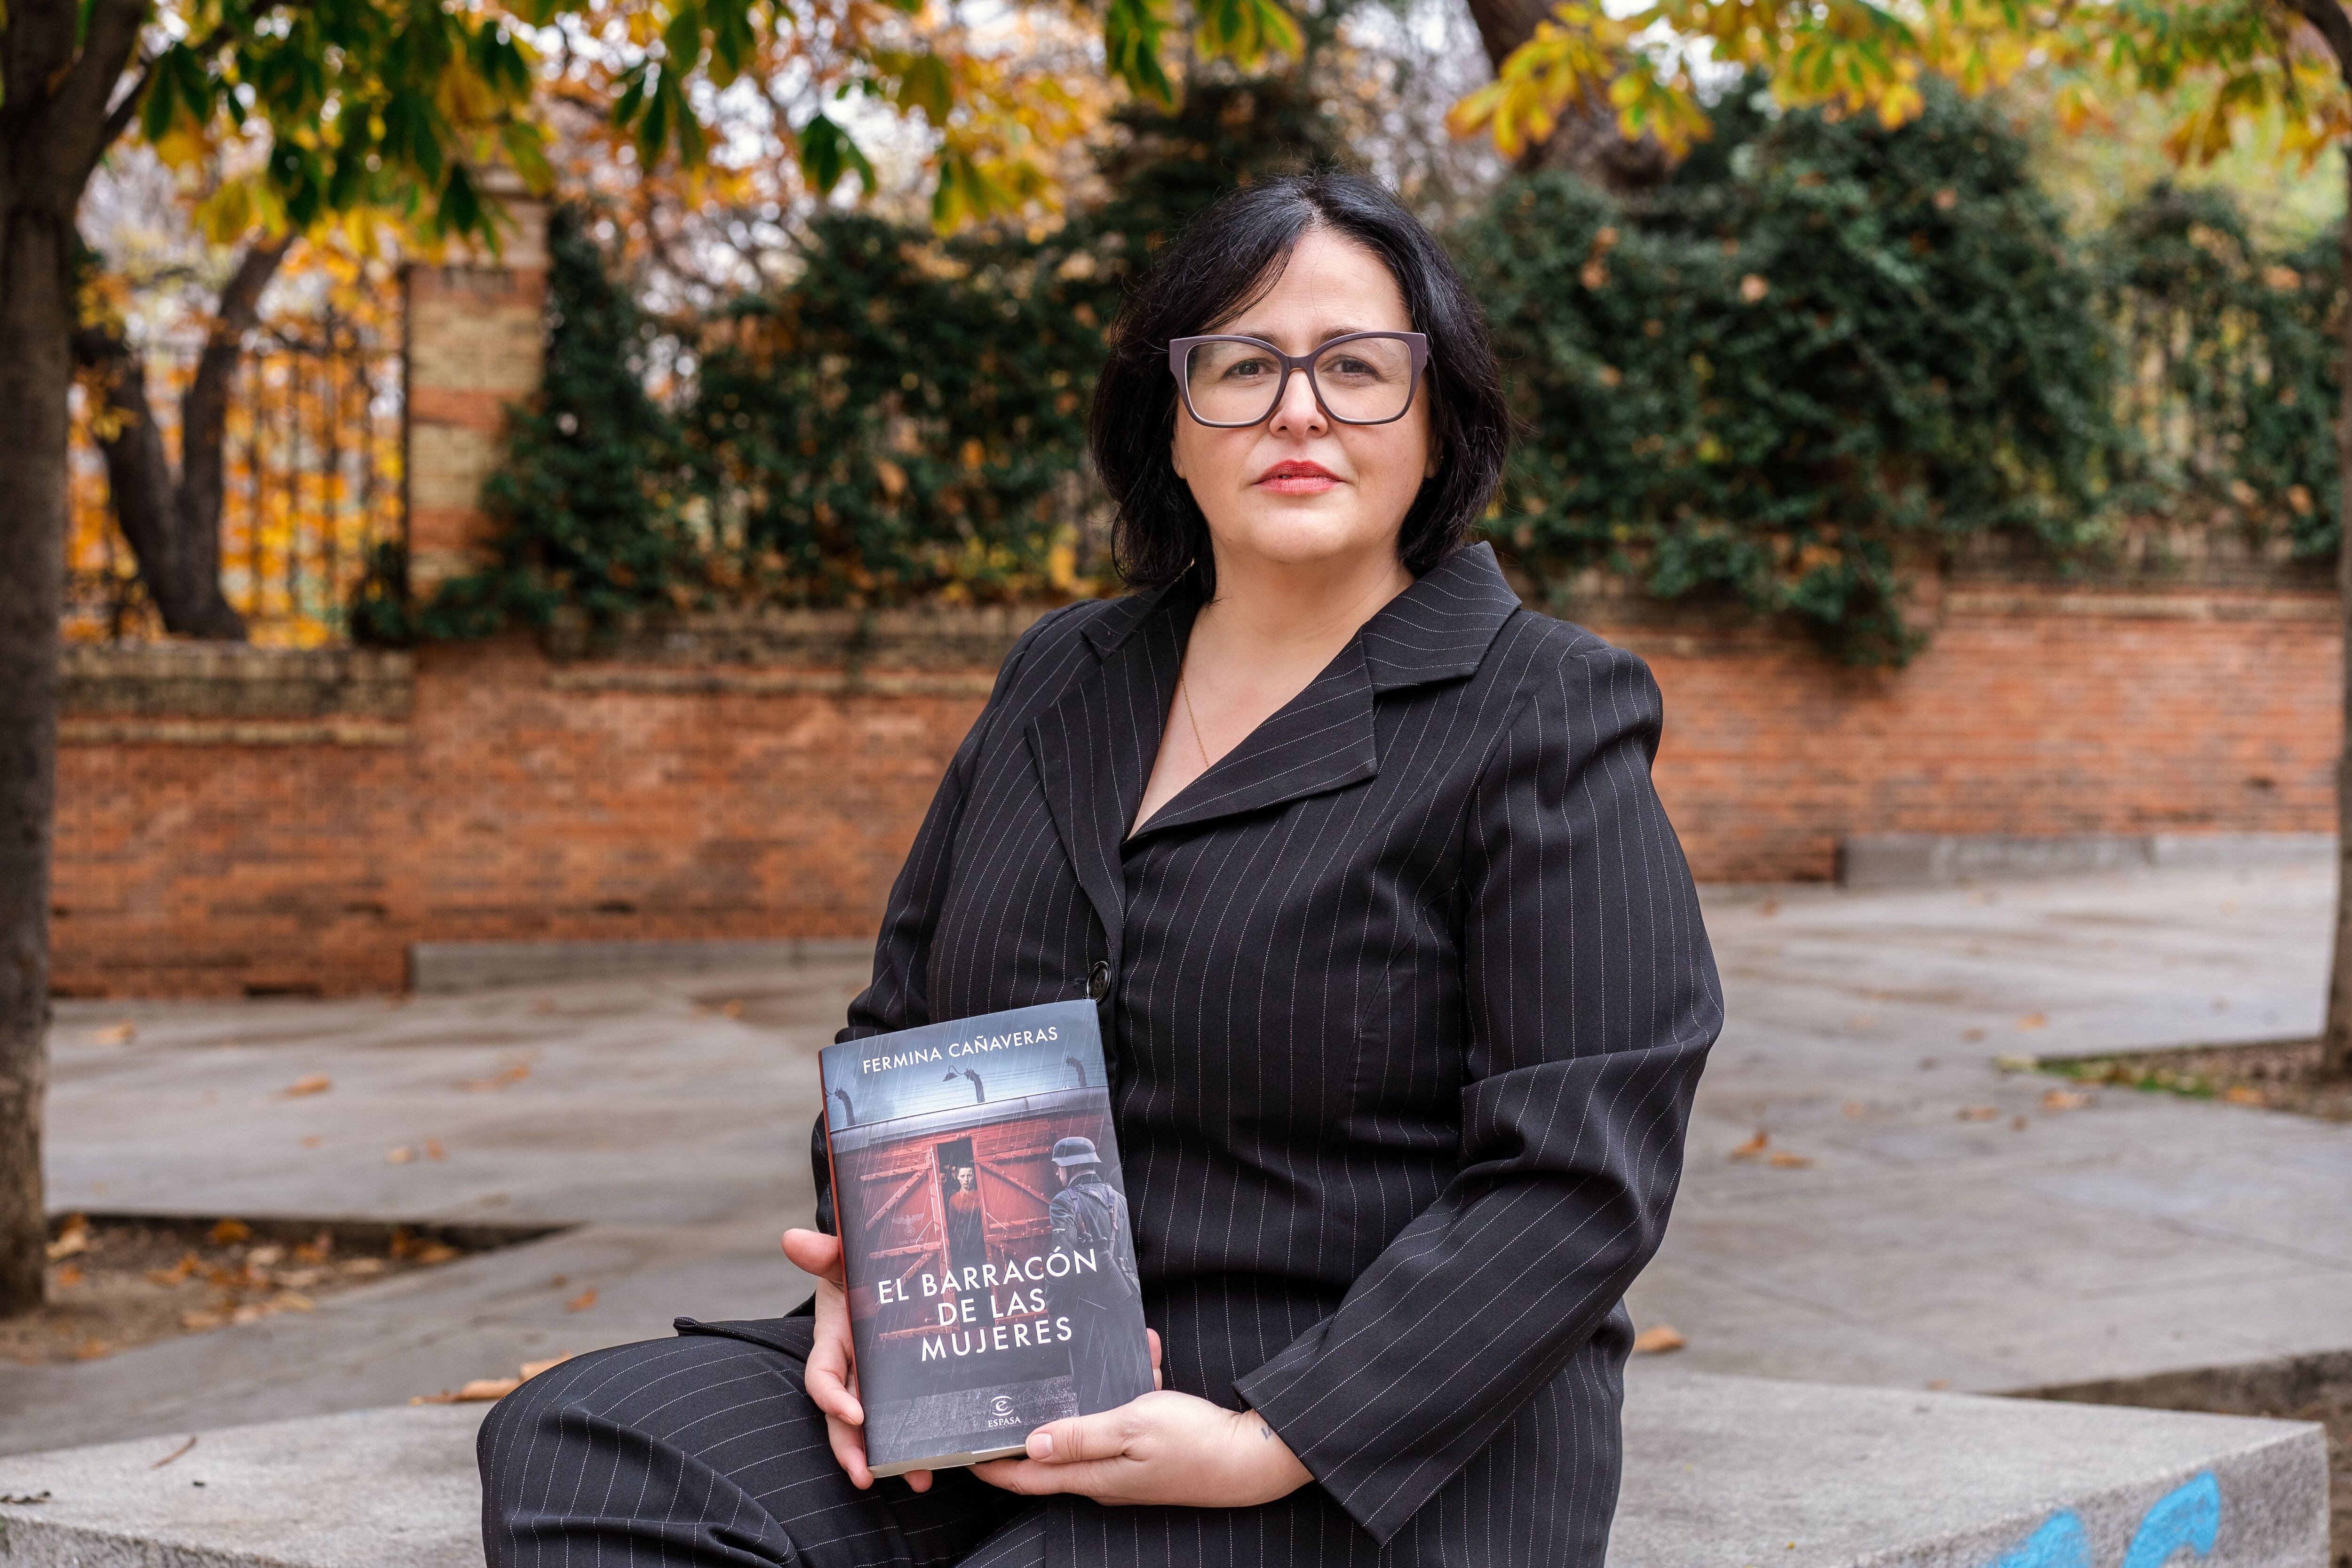 La escritora Fermina Cañaveras, con un ejemplar de su libro 'El barracón de las mujeres'.